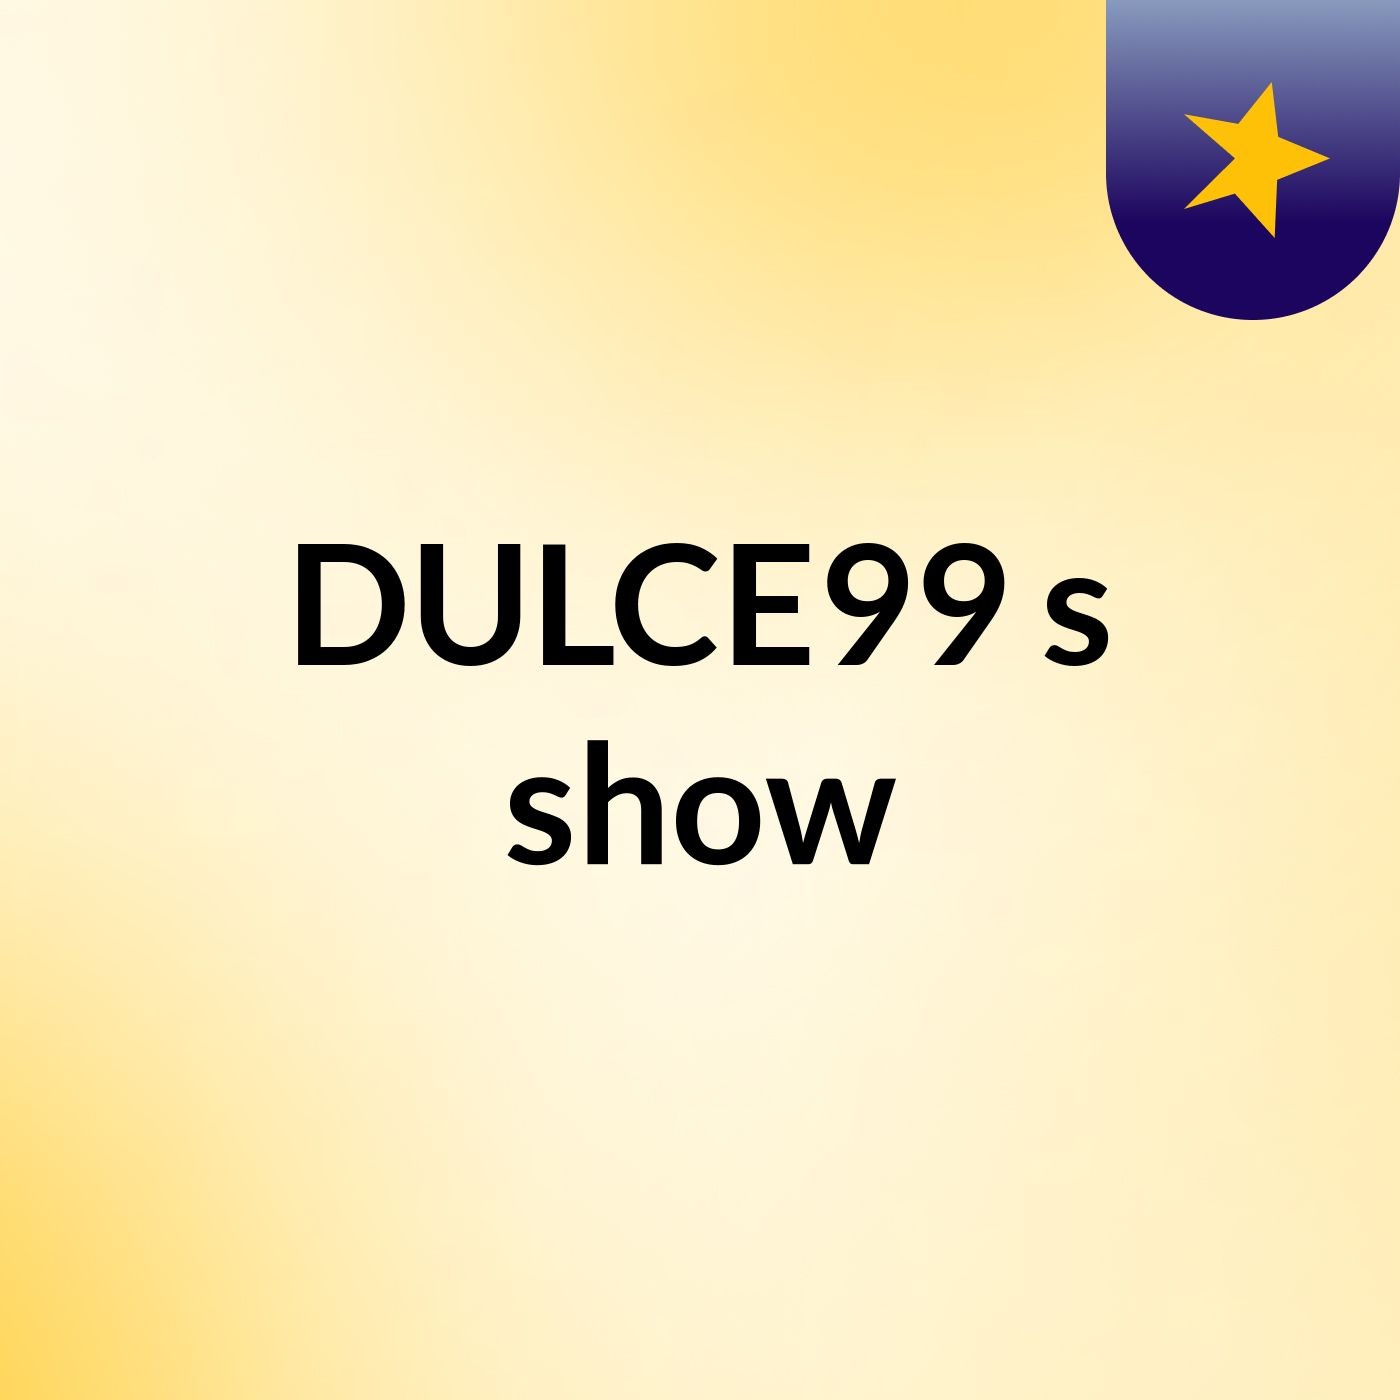 DULCE99's show